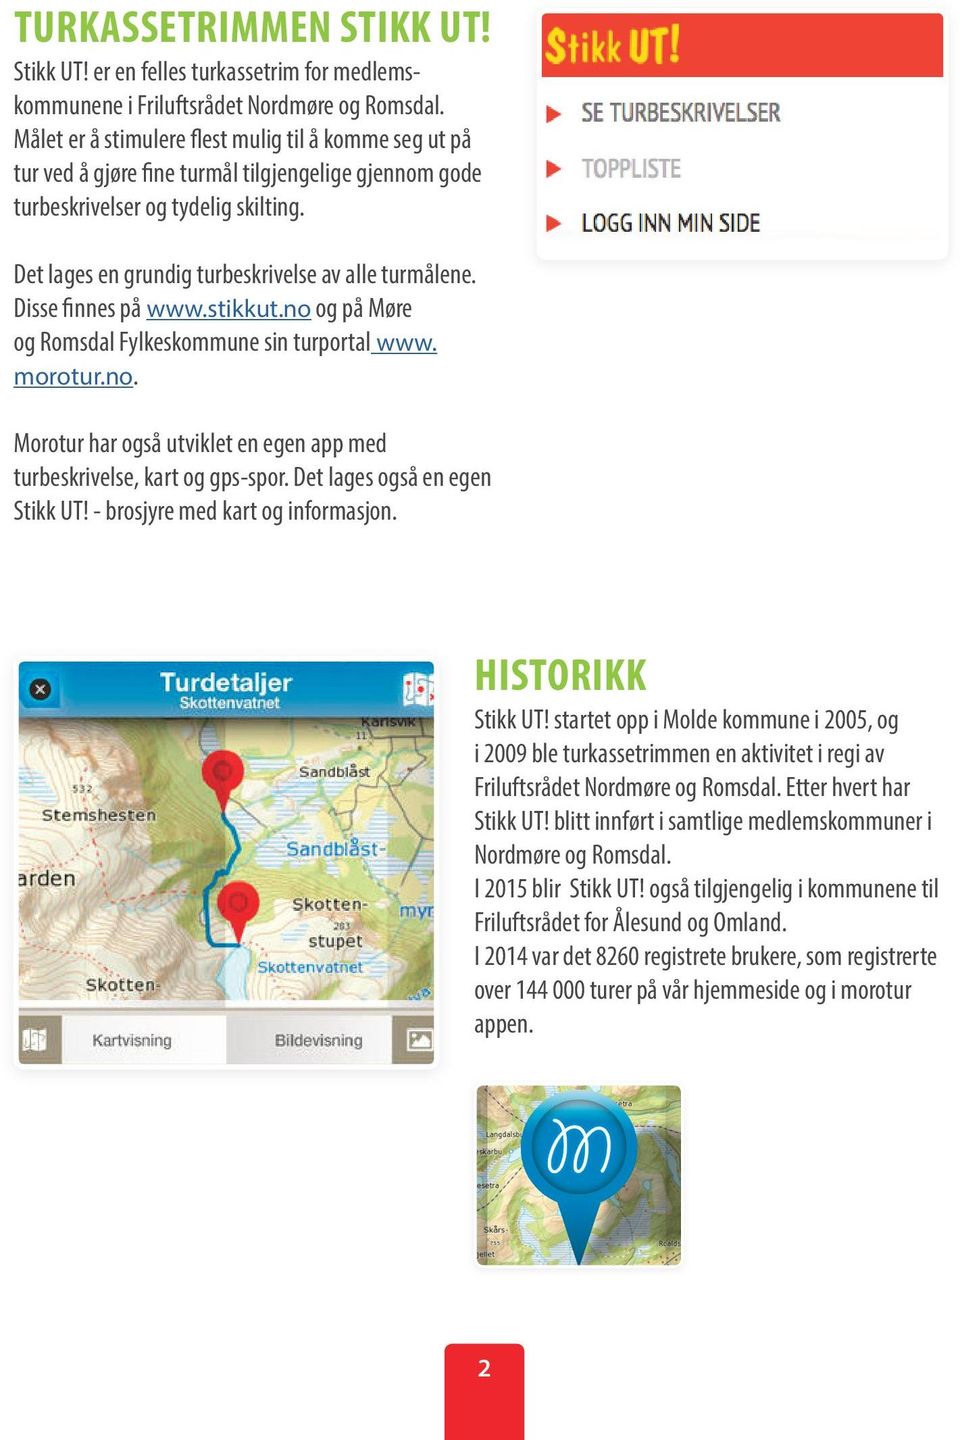 Det lages en grundig turbeskrivelse av alle turmålene. Disse finnes på www.stikkut.no og på Møre og Romsdal Fylkeskommune sin turportal www. morotur.no. Morotur har også utviklet en egen app med turbeskrivelse, kart og gps-spor.